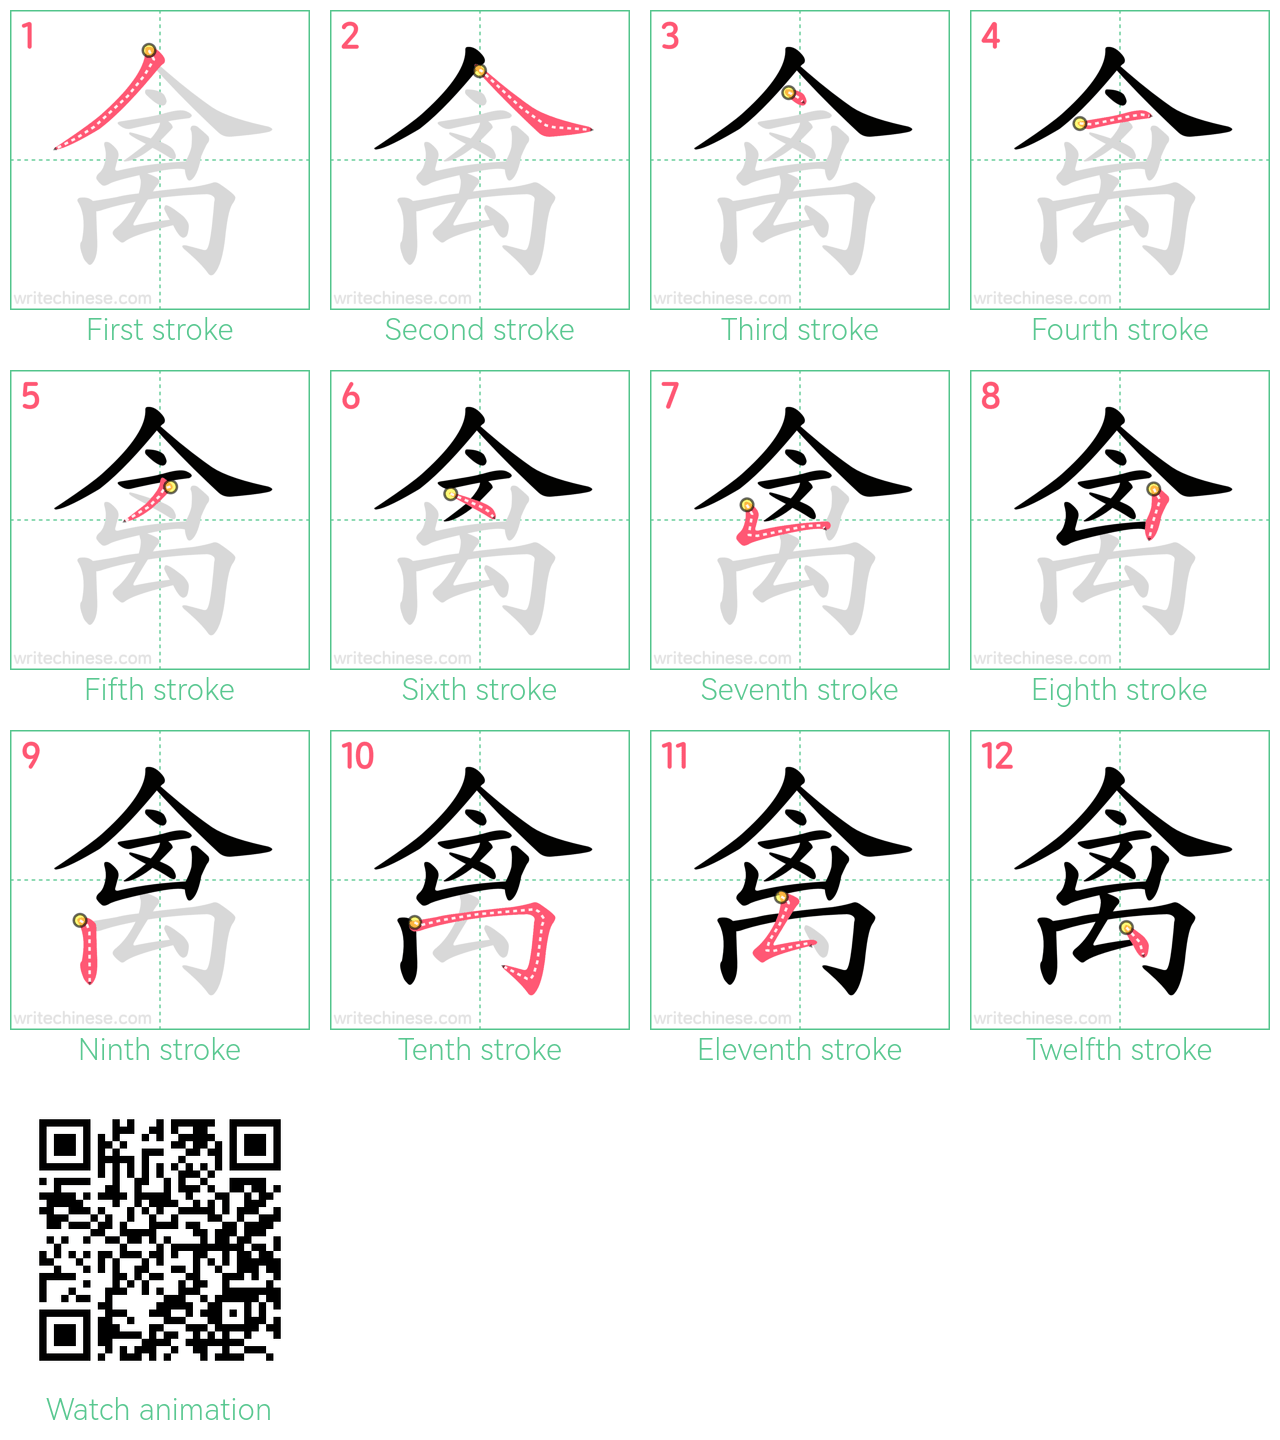 禽 step-by-step stroke order diagrams